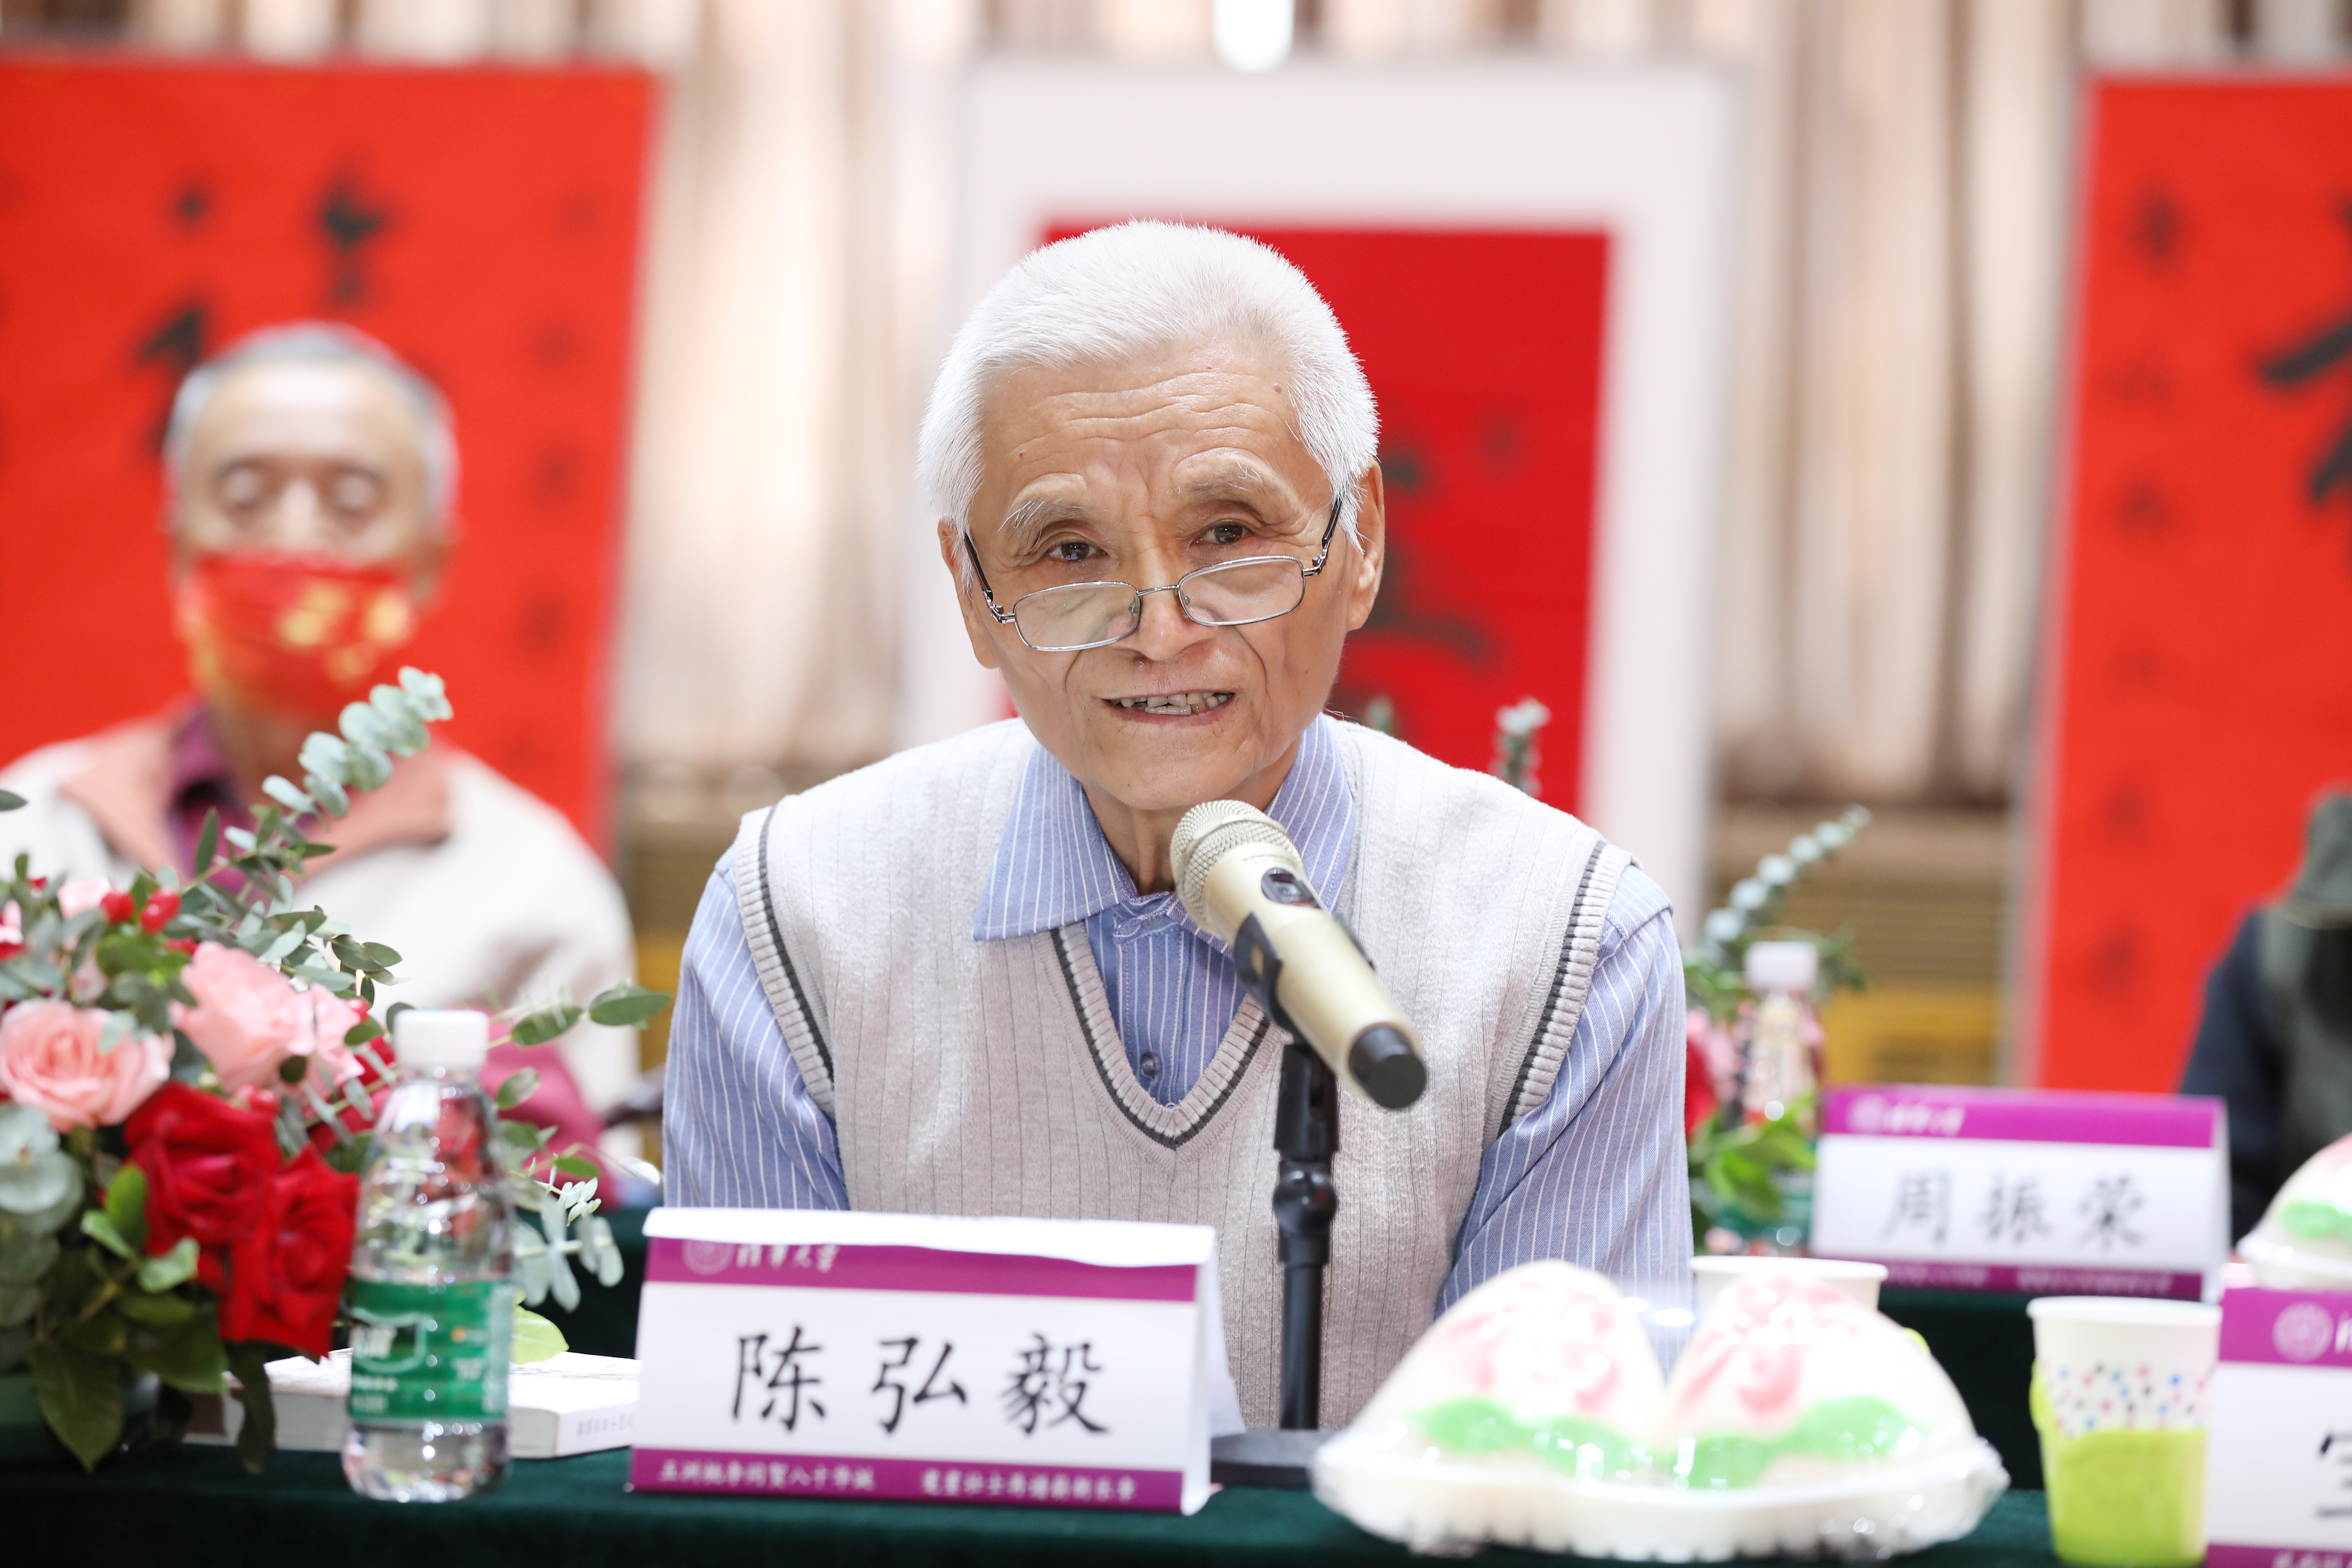 20221004-八十寿辰金婚庆典-赵青松-80岁寿星代表发言 (3).JPG